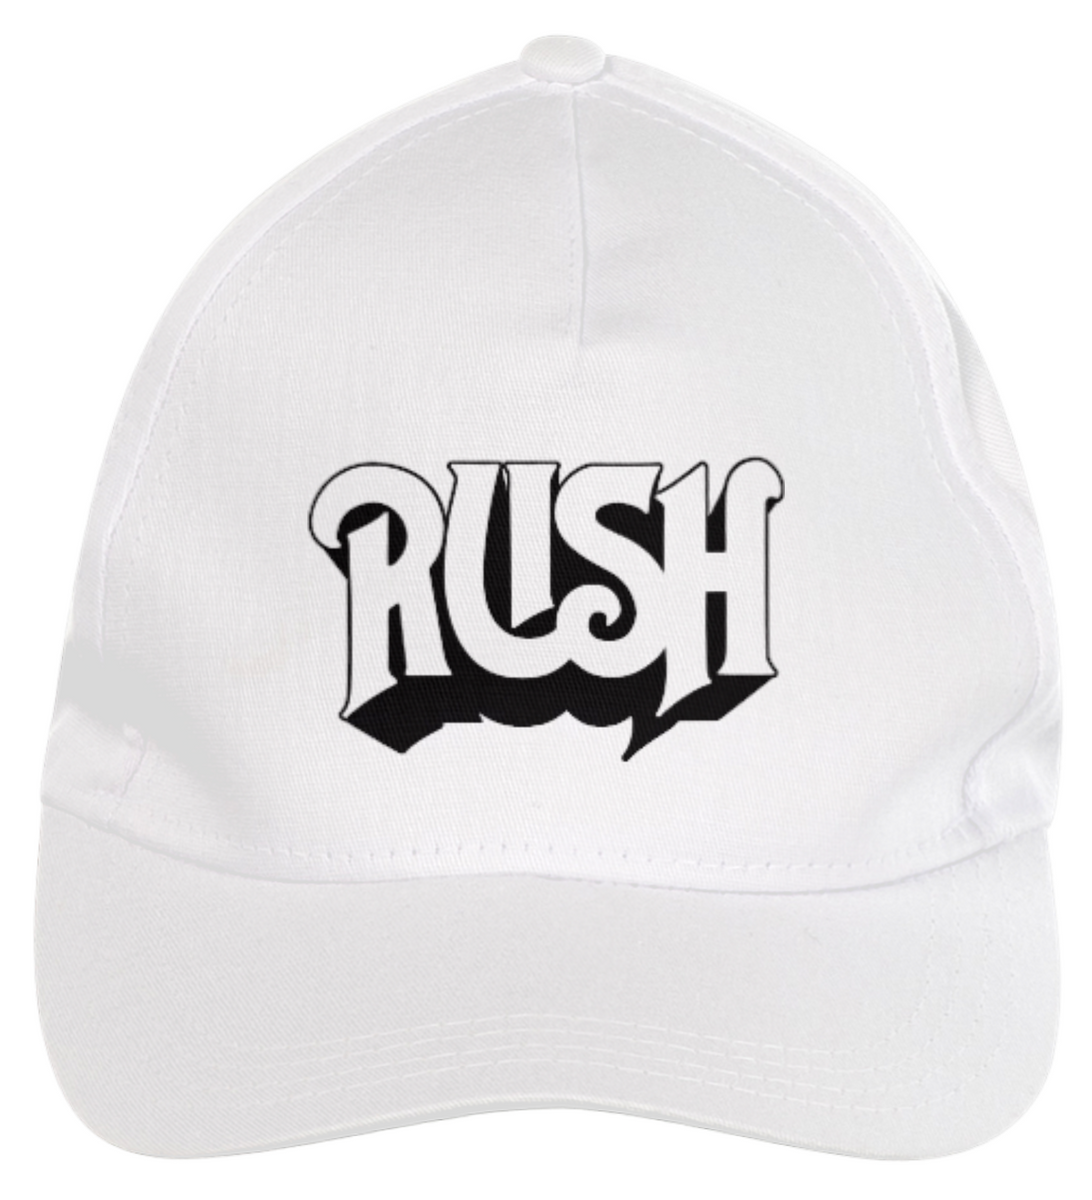 Nome do produto: Rush